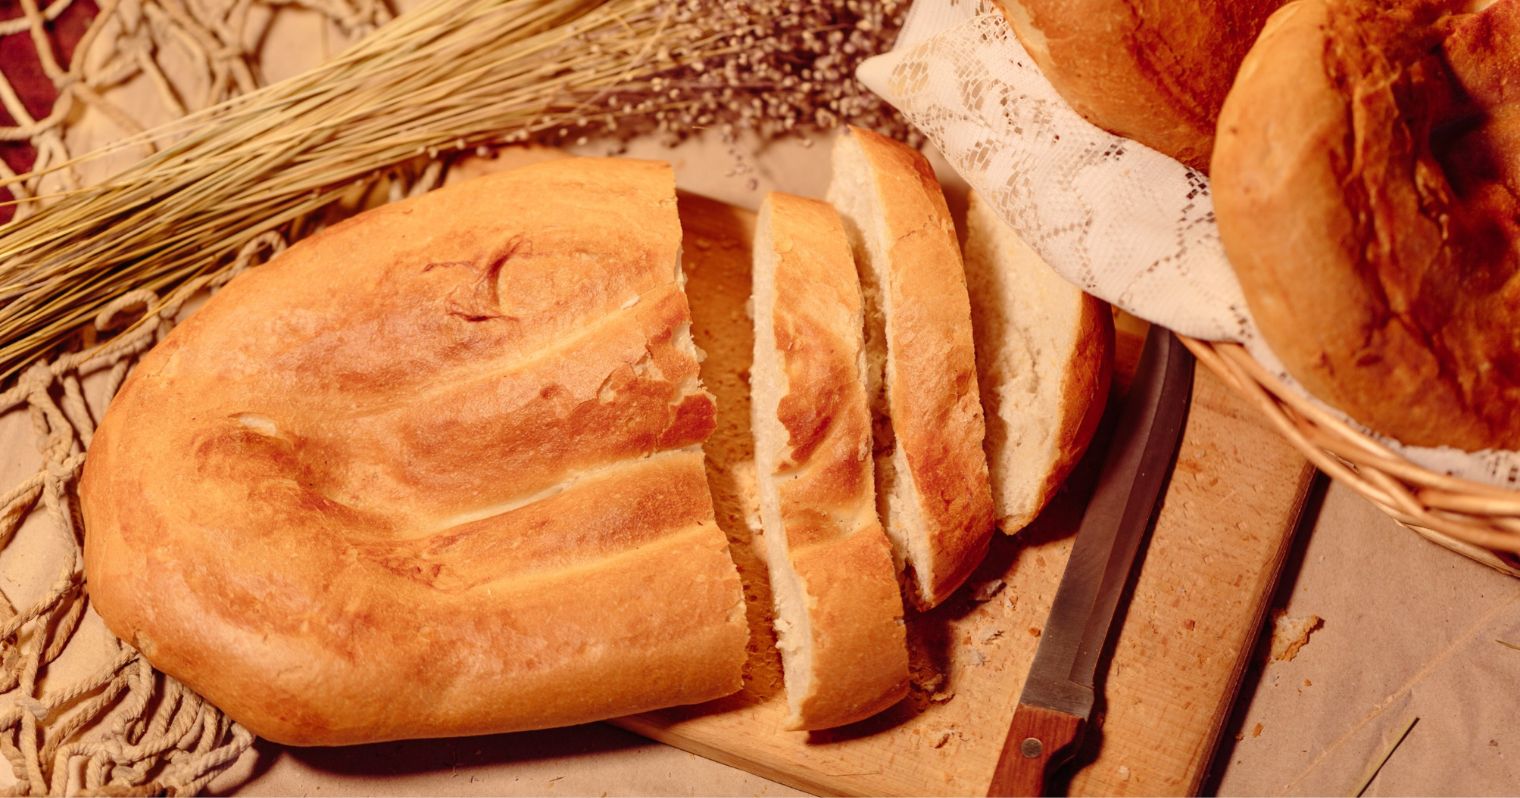 A képen felülnézetből egy vekni kenyér látható, egy marék búzakalász, és néhány másik kenyérből is részletek